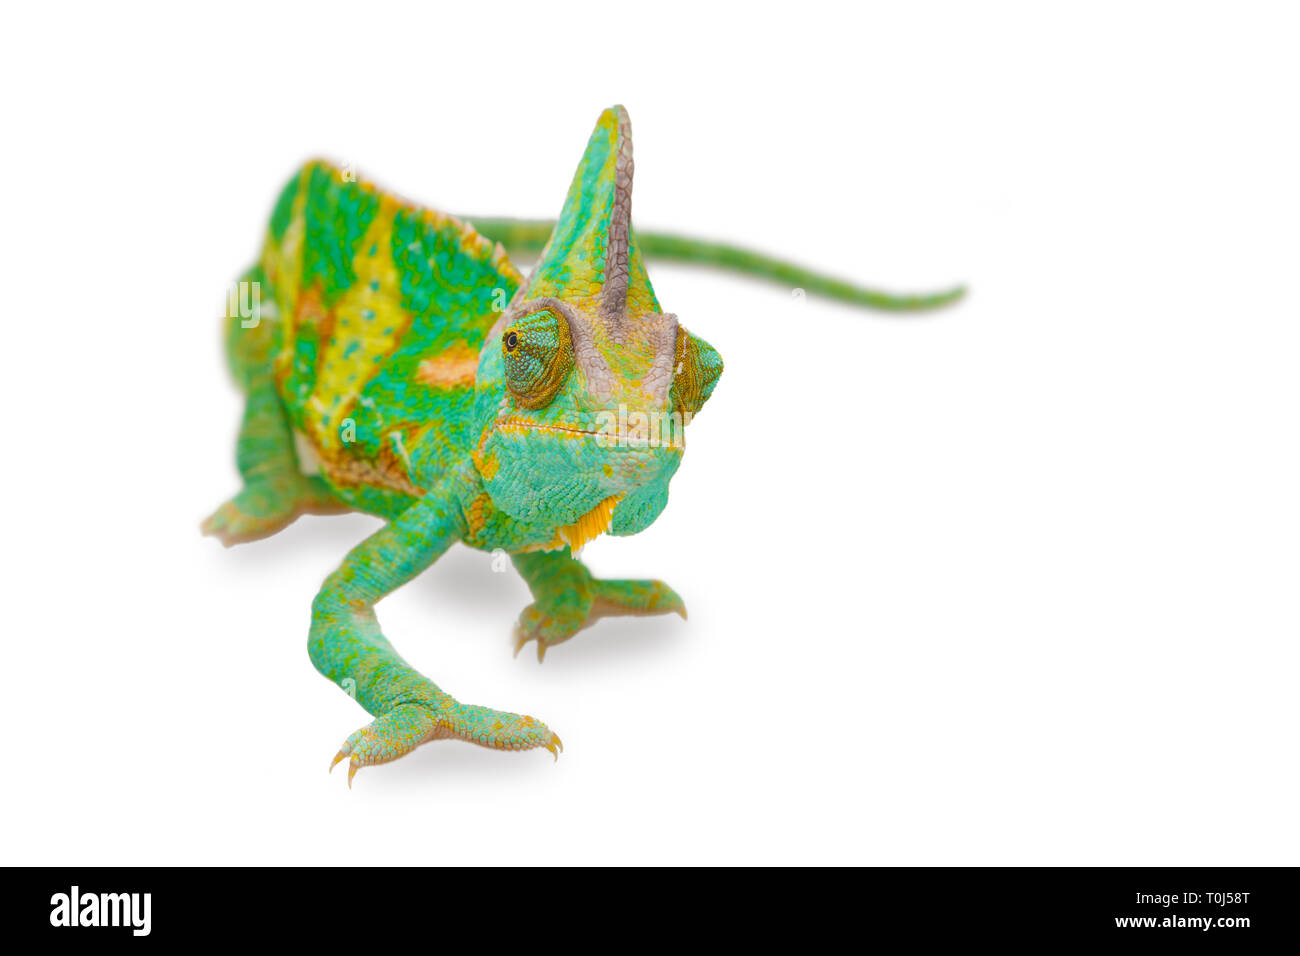 Chiudere la vista di un bel verde colorato chamaeleo calyptratus guardando in avanti. Specie chiamato anche velato, cono-testa o yemen chameleon. Foto Stock